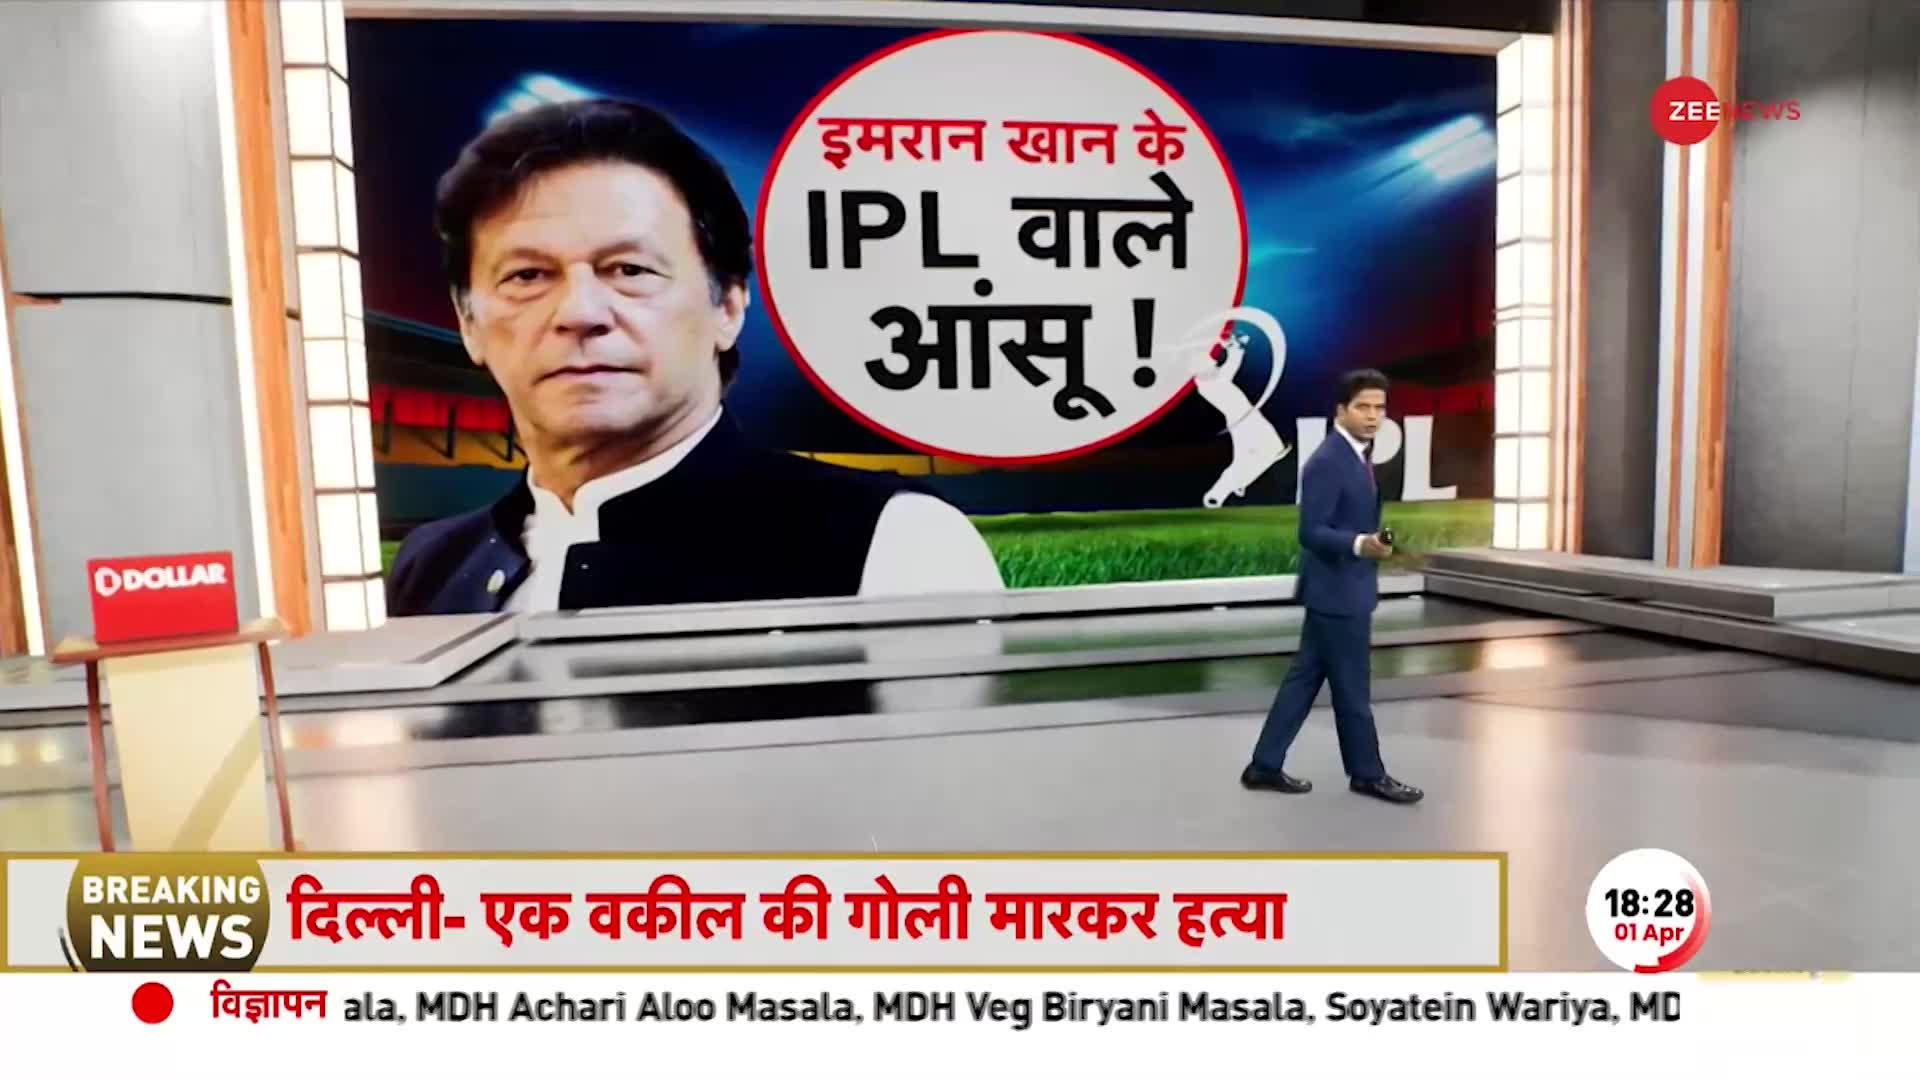 Deshhit: BCCI की ताकत से बौखलाया पाकिस्तान, IPL देख उड़ी इमरान खान की नींद!